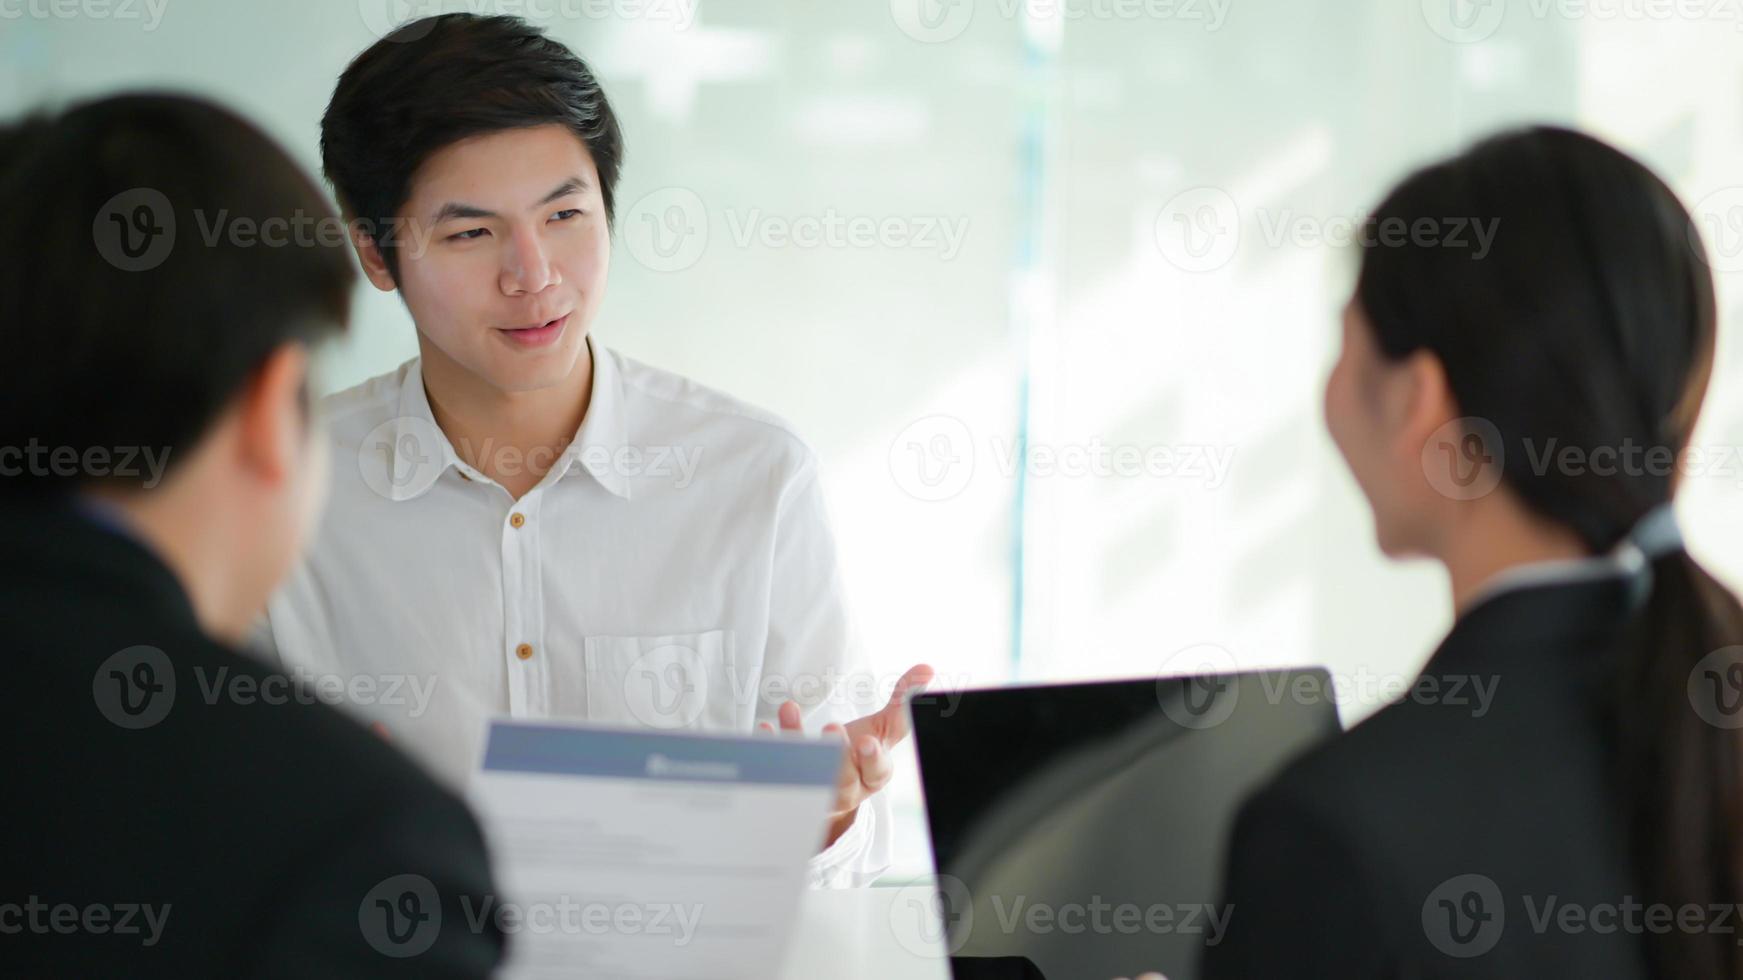 concepto de solicitar trabajo, entrevistar a los solicitantes de empleo que presentan su currículum para que los ejecutivos lo consideren. foto